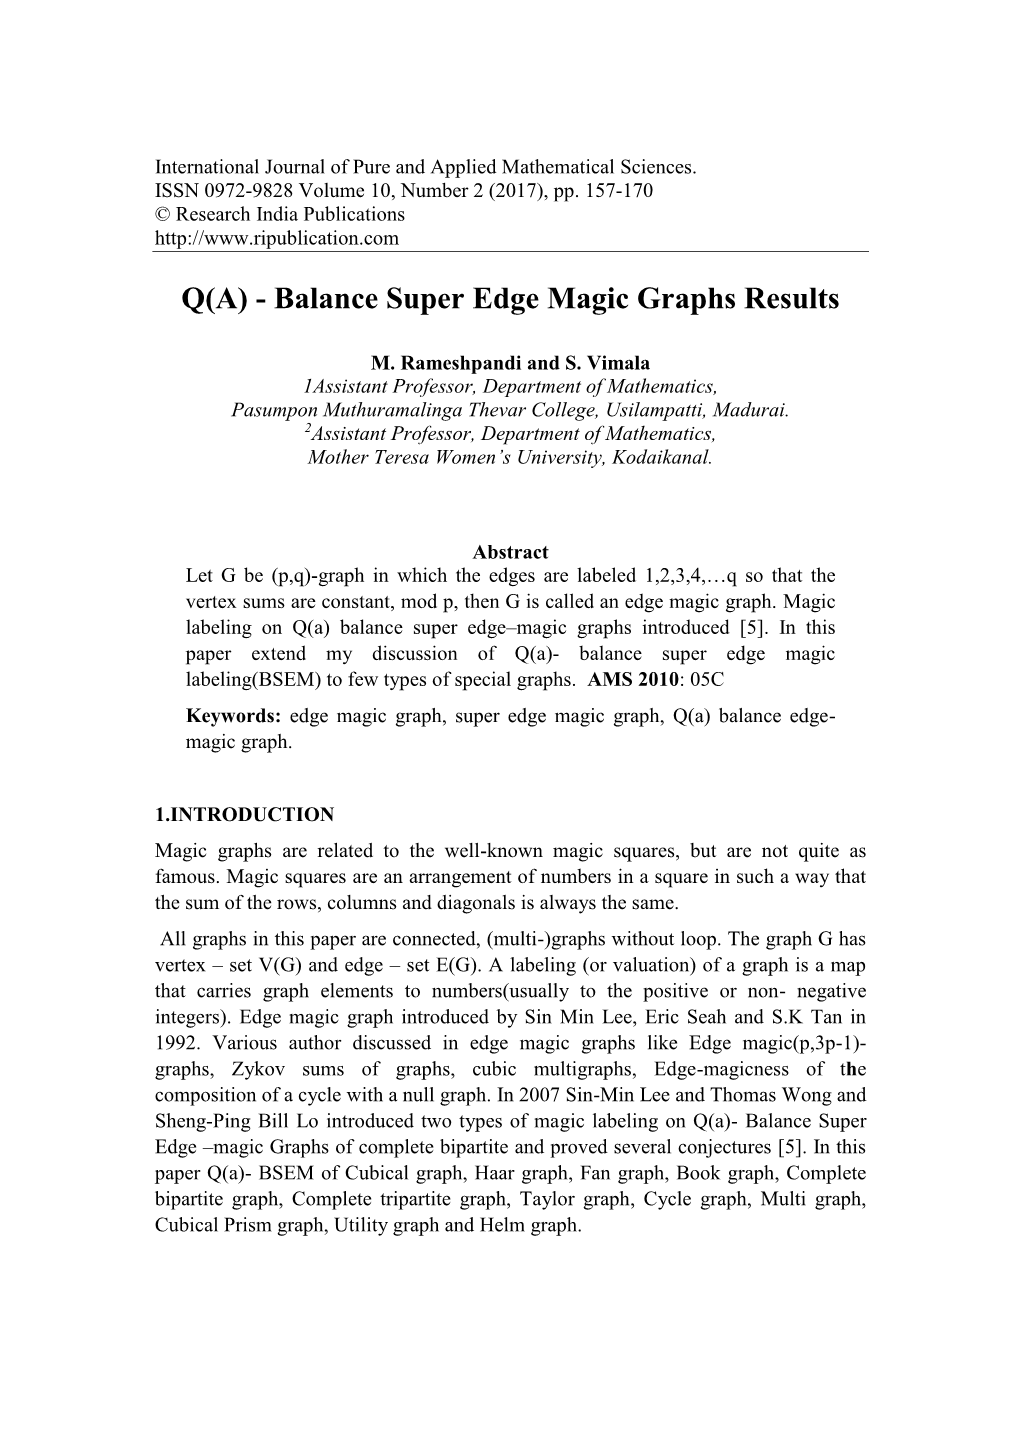 Q(A) - Balance Super Edge Magic Graphs Results